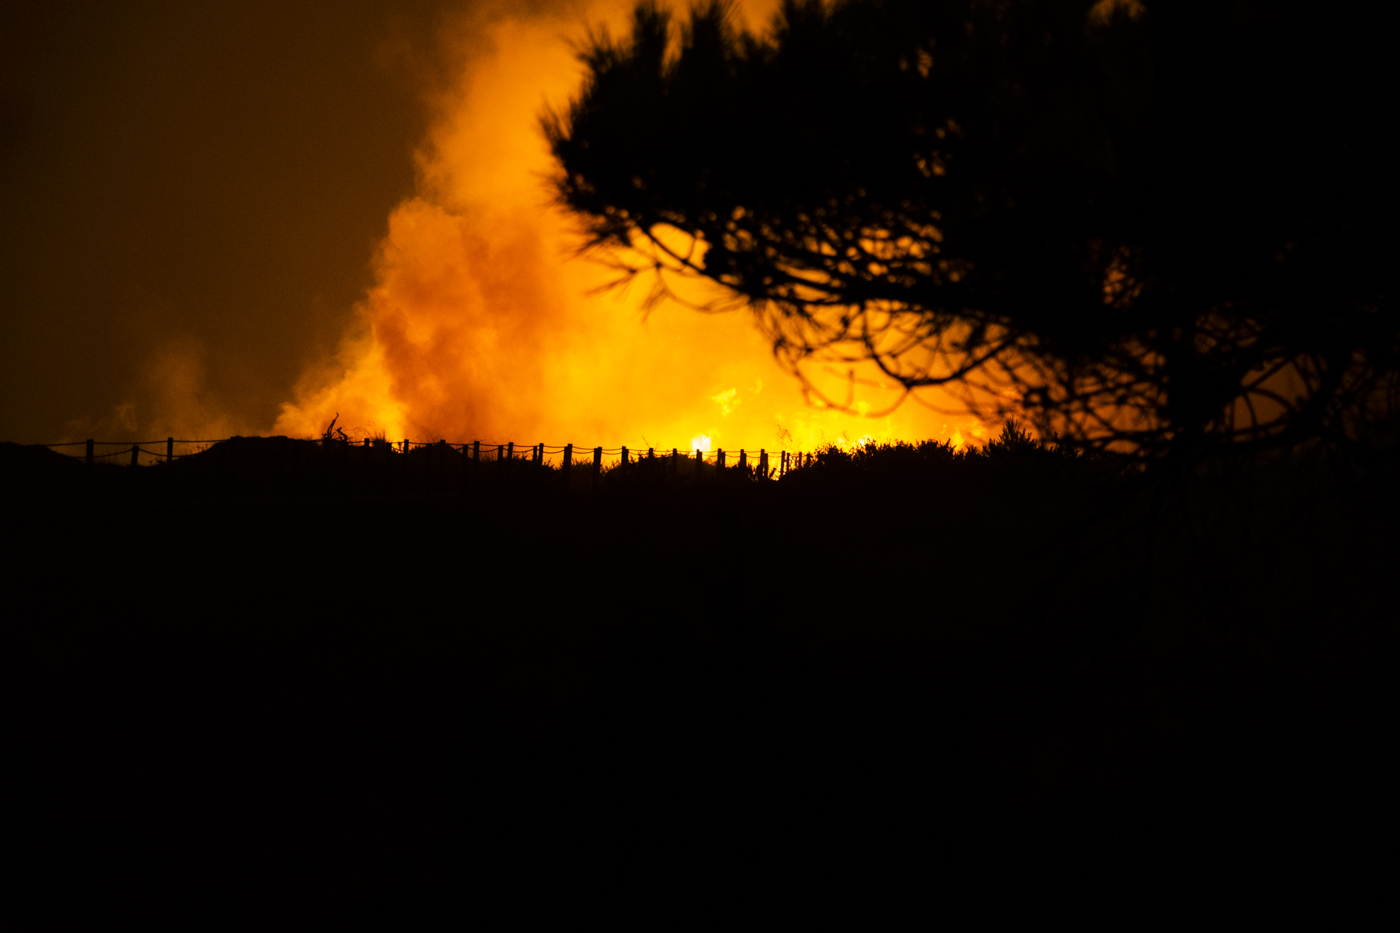 Quarto fogo em poucos dias no Parque Natural Sintra-Cascais. PJ já estava a investigar